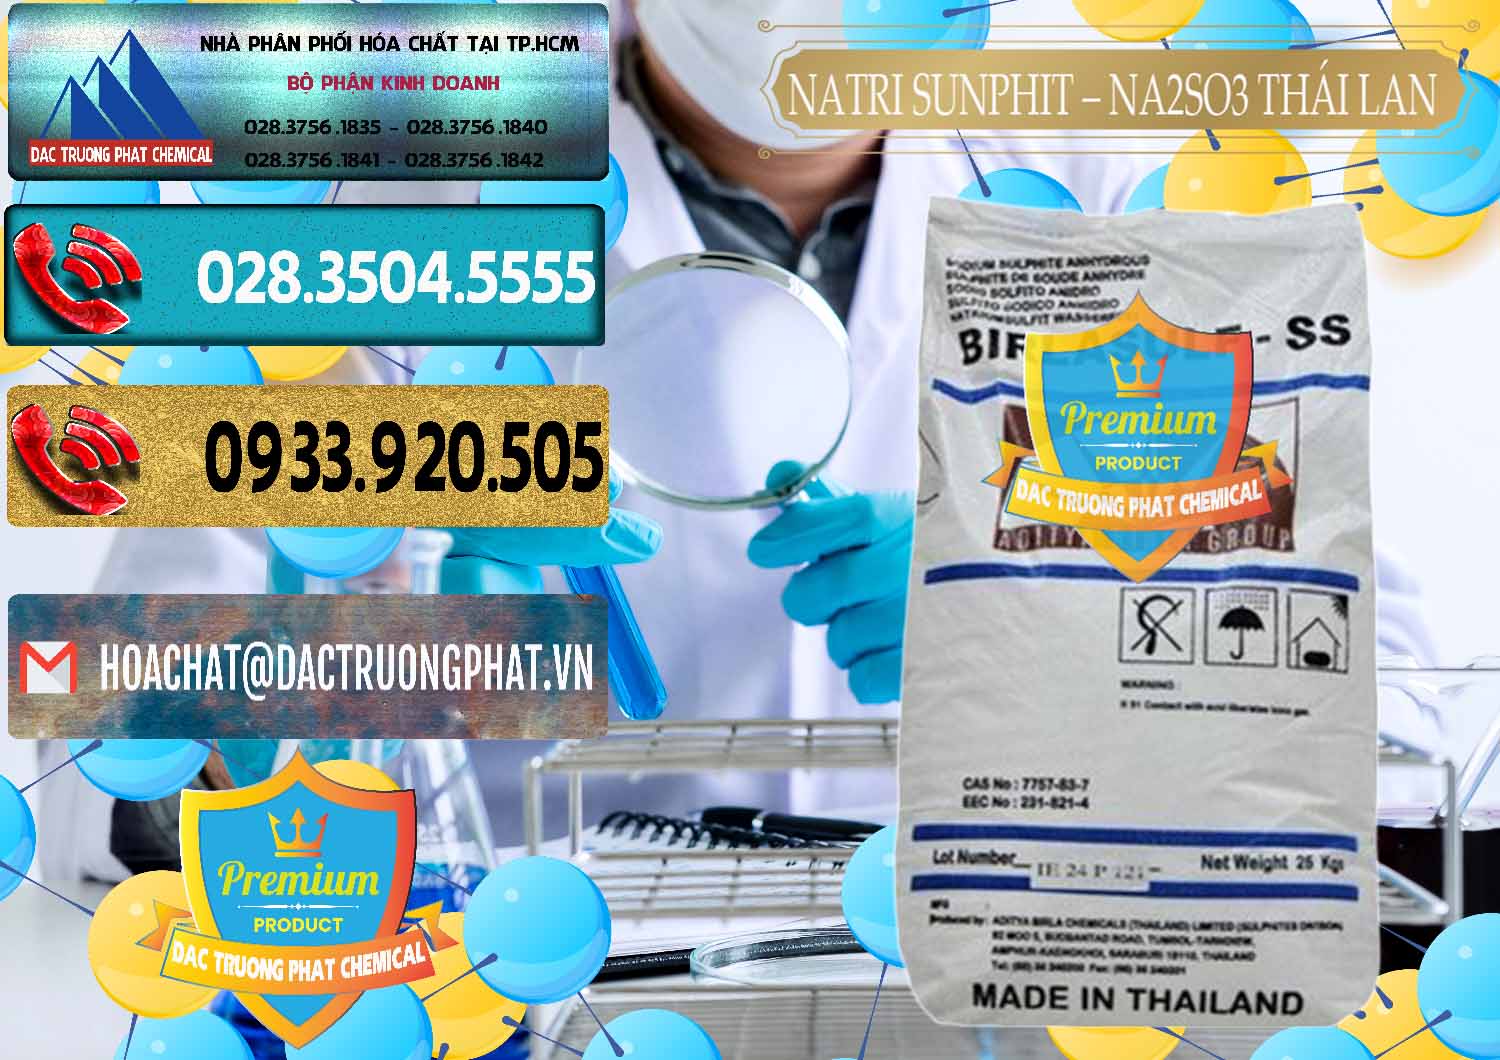 Nơi cung cấp _ bán Natri Sunphit - NA2SO3 Thái Lan - 0105 - Nơi chuyên cung cấp _ kinh doanh hóa chất tại TP.HCM - hoachatdetnhuom.com